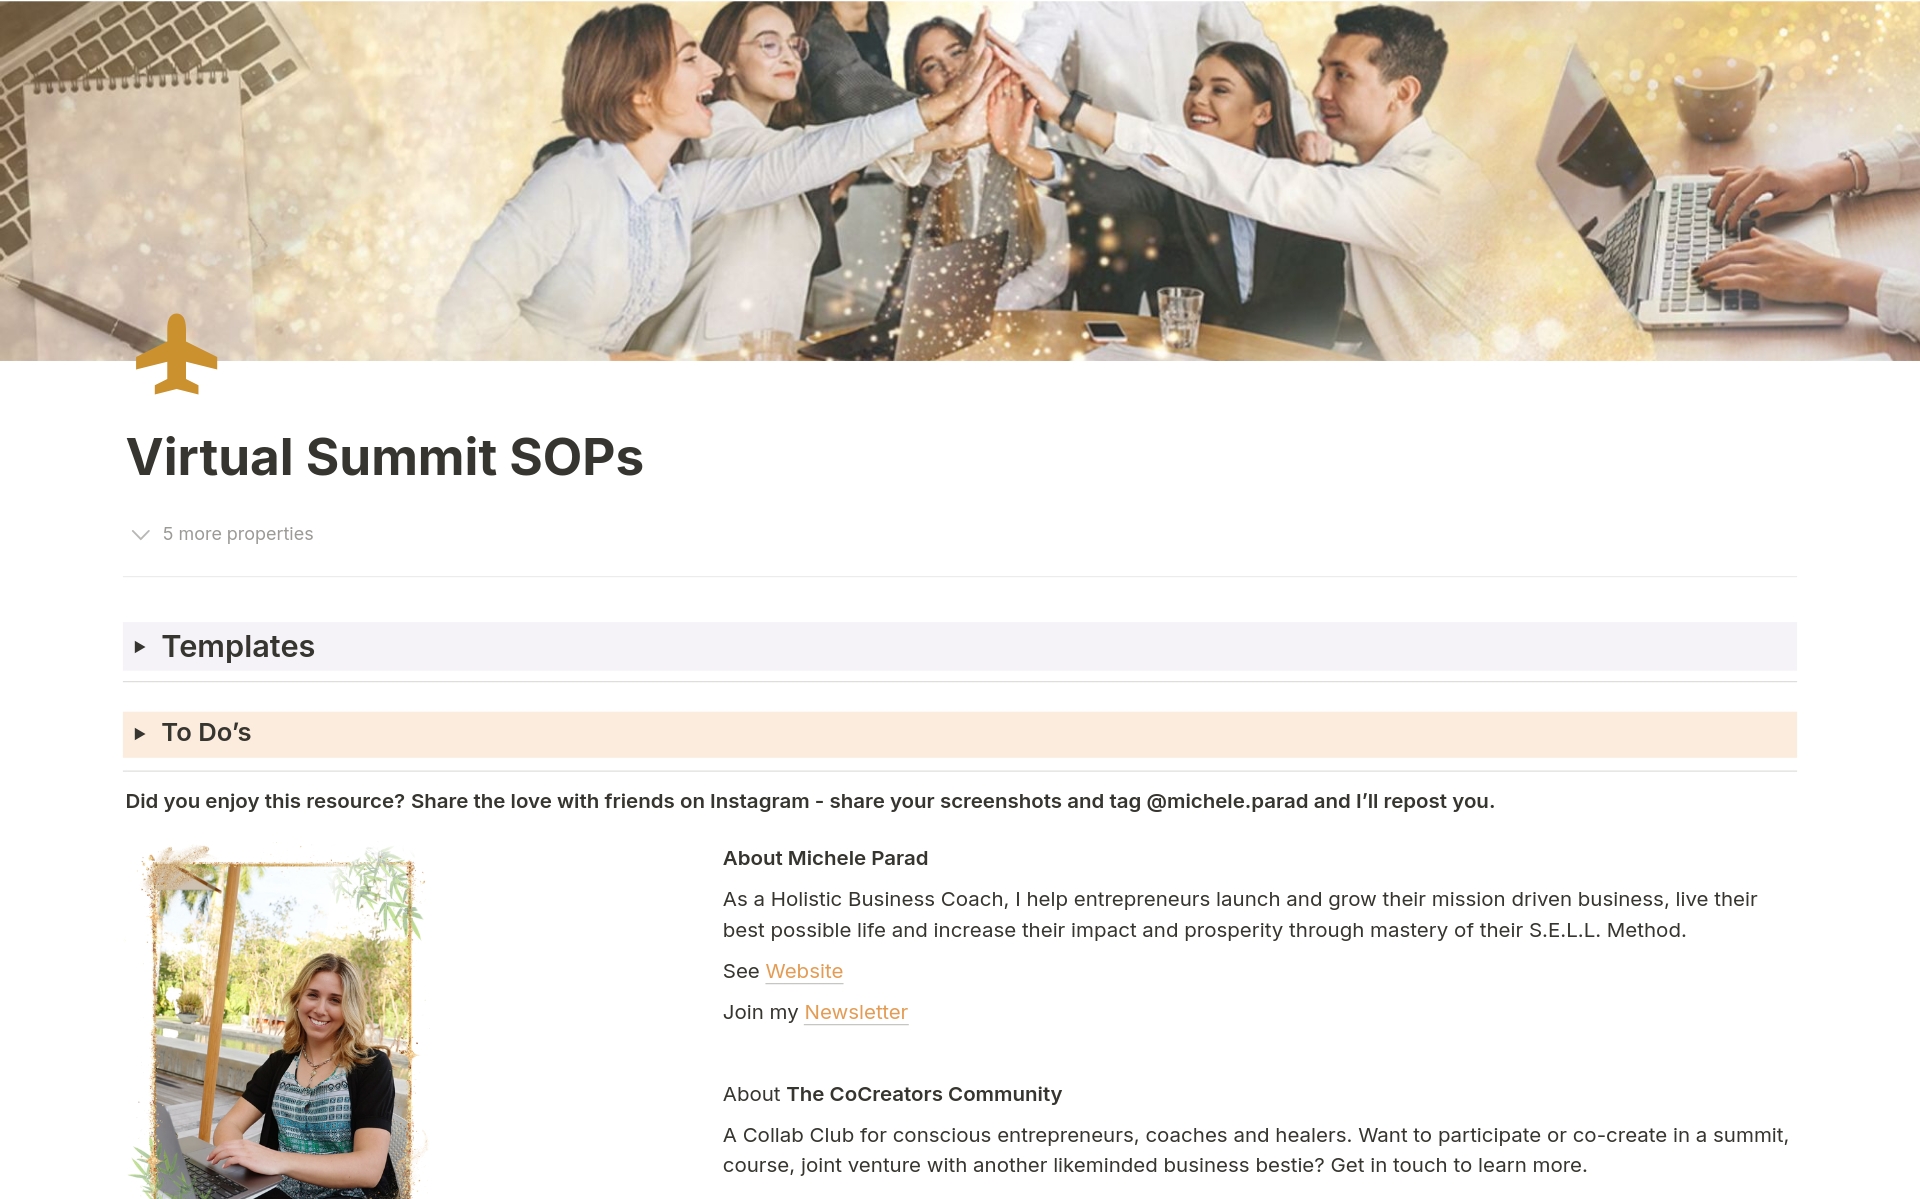 Vista previa de una plantilla para Virtual Summit SOPs